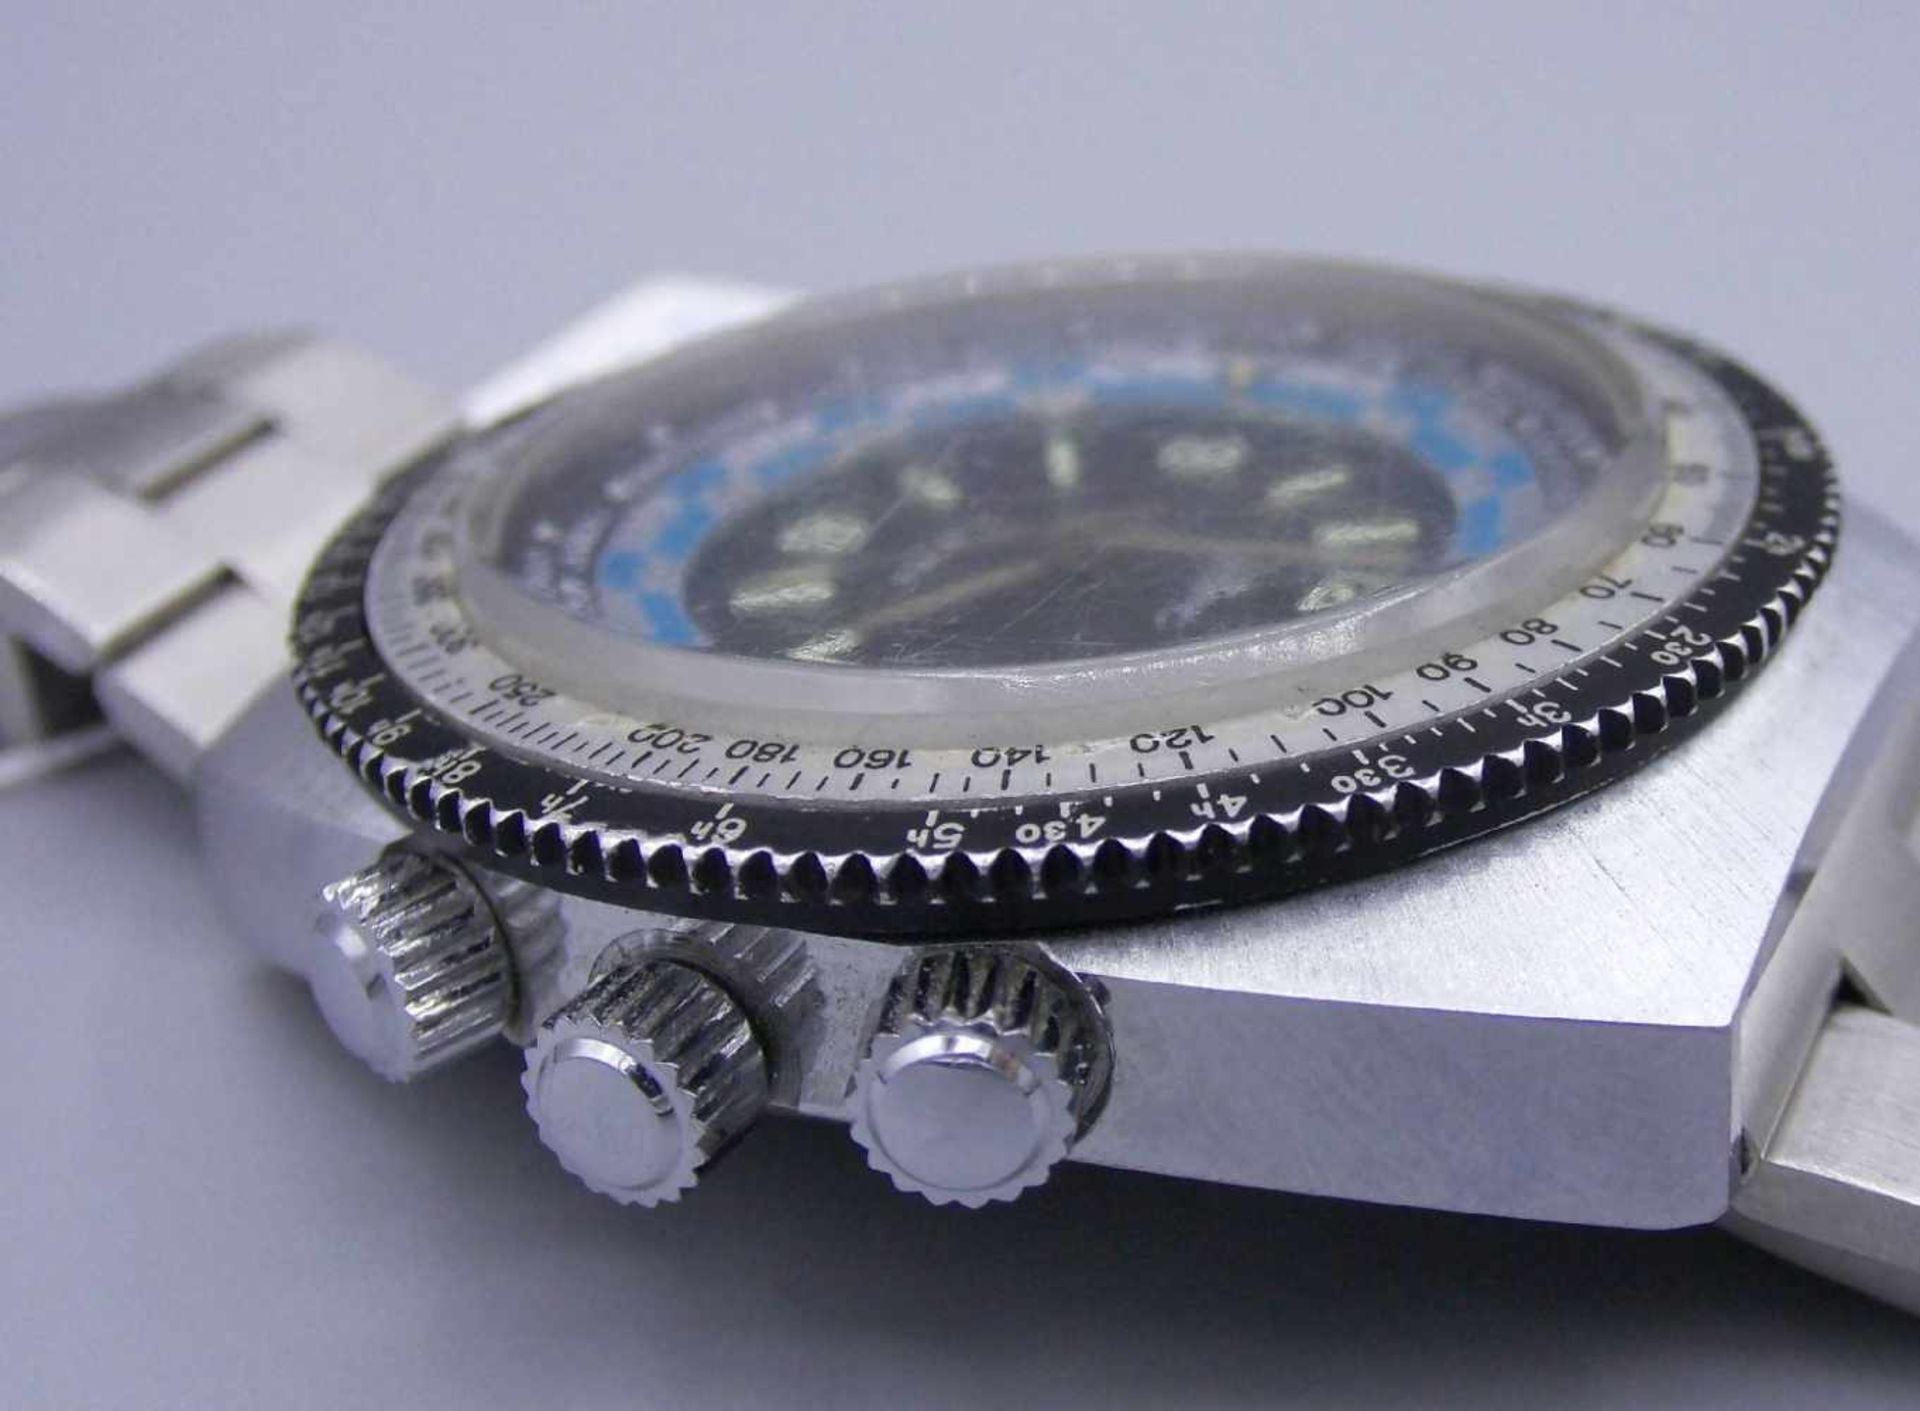 VINTAGE ARMBANDUHR : Tempic Weltzeituhr / wristwatch, mechanisches Werk. Edelstahlgehäuse an - Bild 6 aus 8